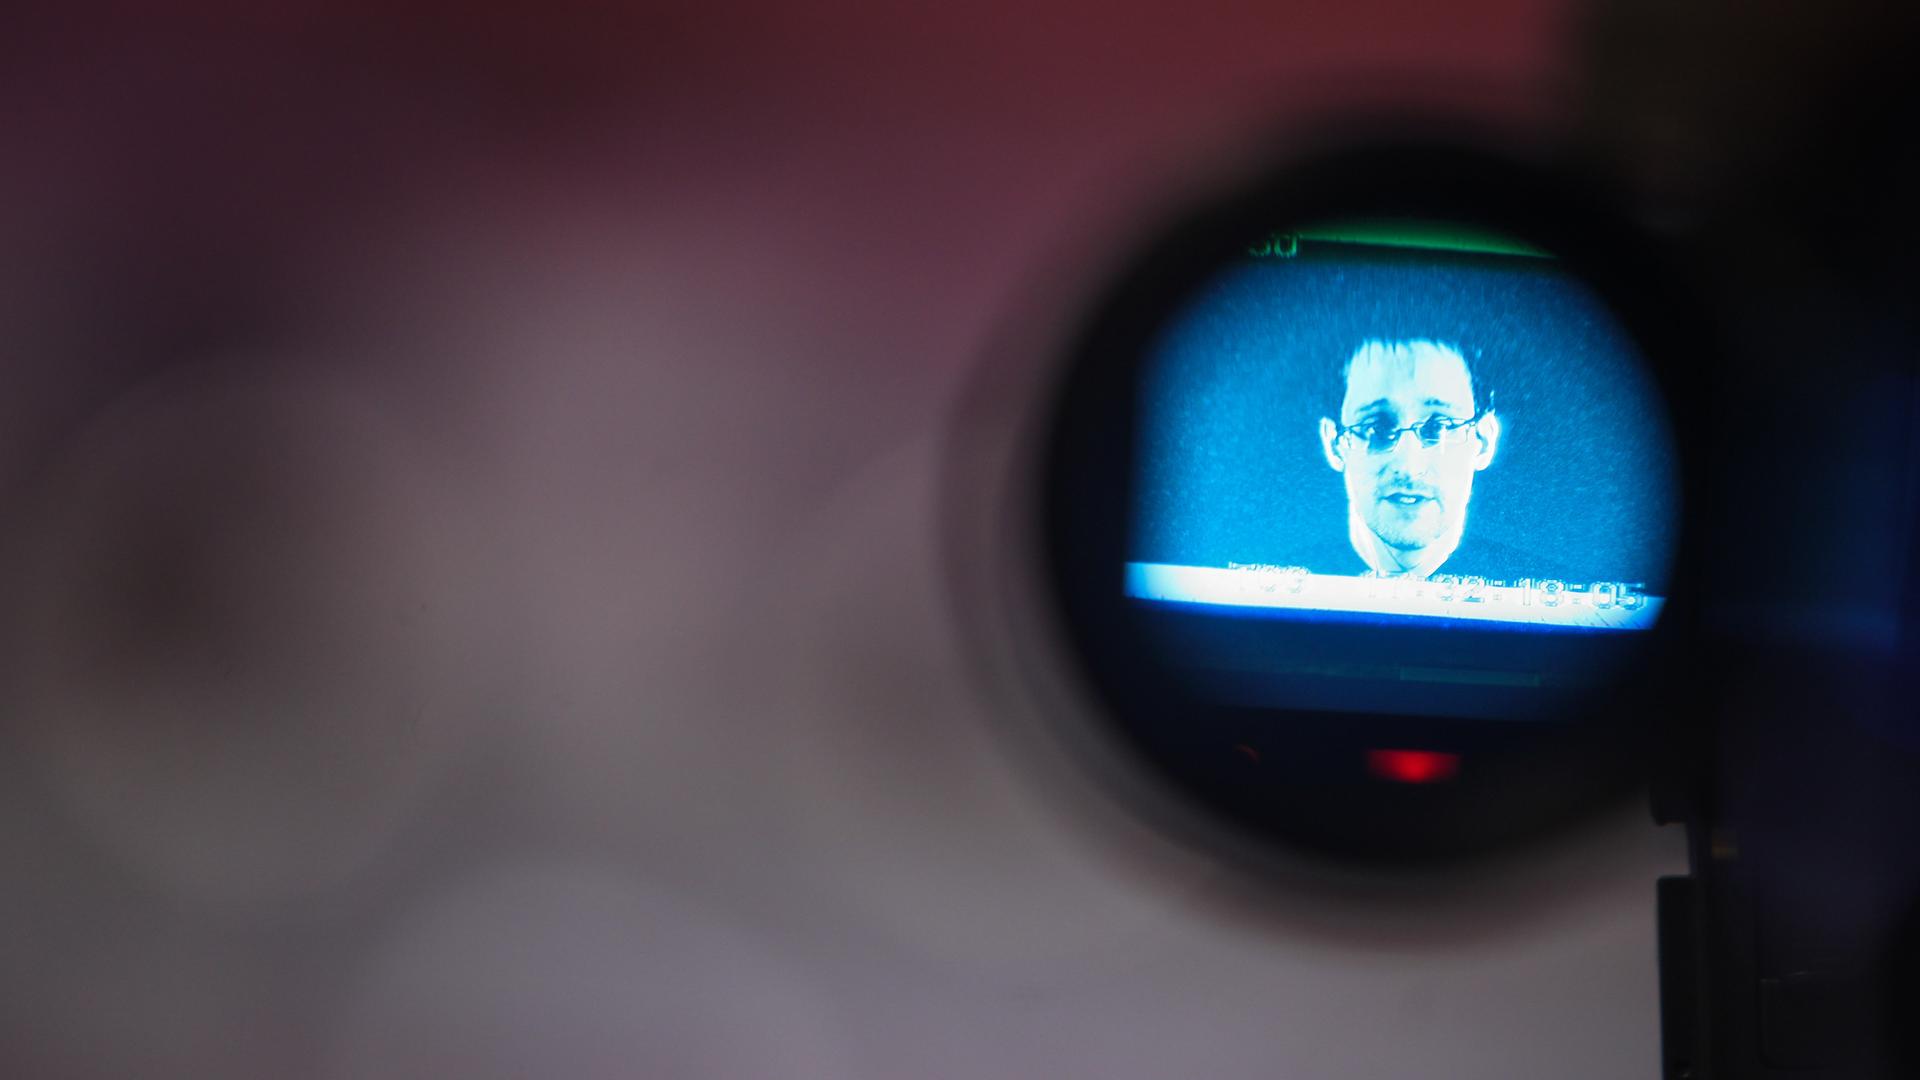 Auf einem Kameradisplay ist der Whistleblower Edward Snowden zu sehen.